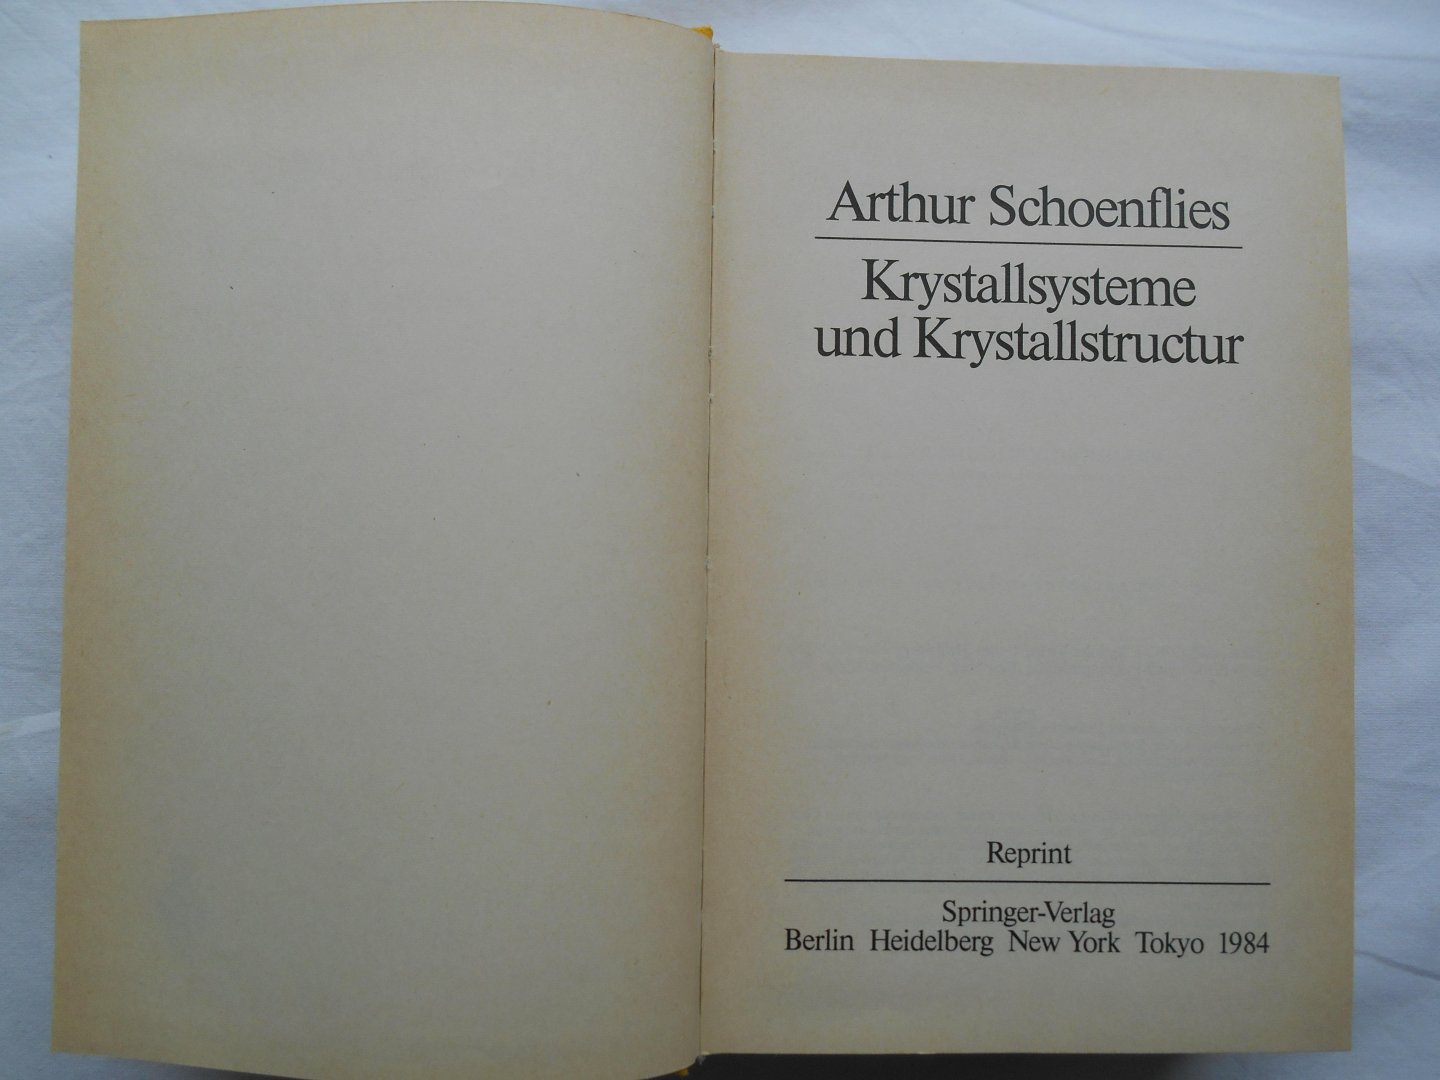 Arthur Schoenflies - Krystallsysteme und Krystallstructur